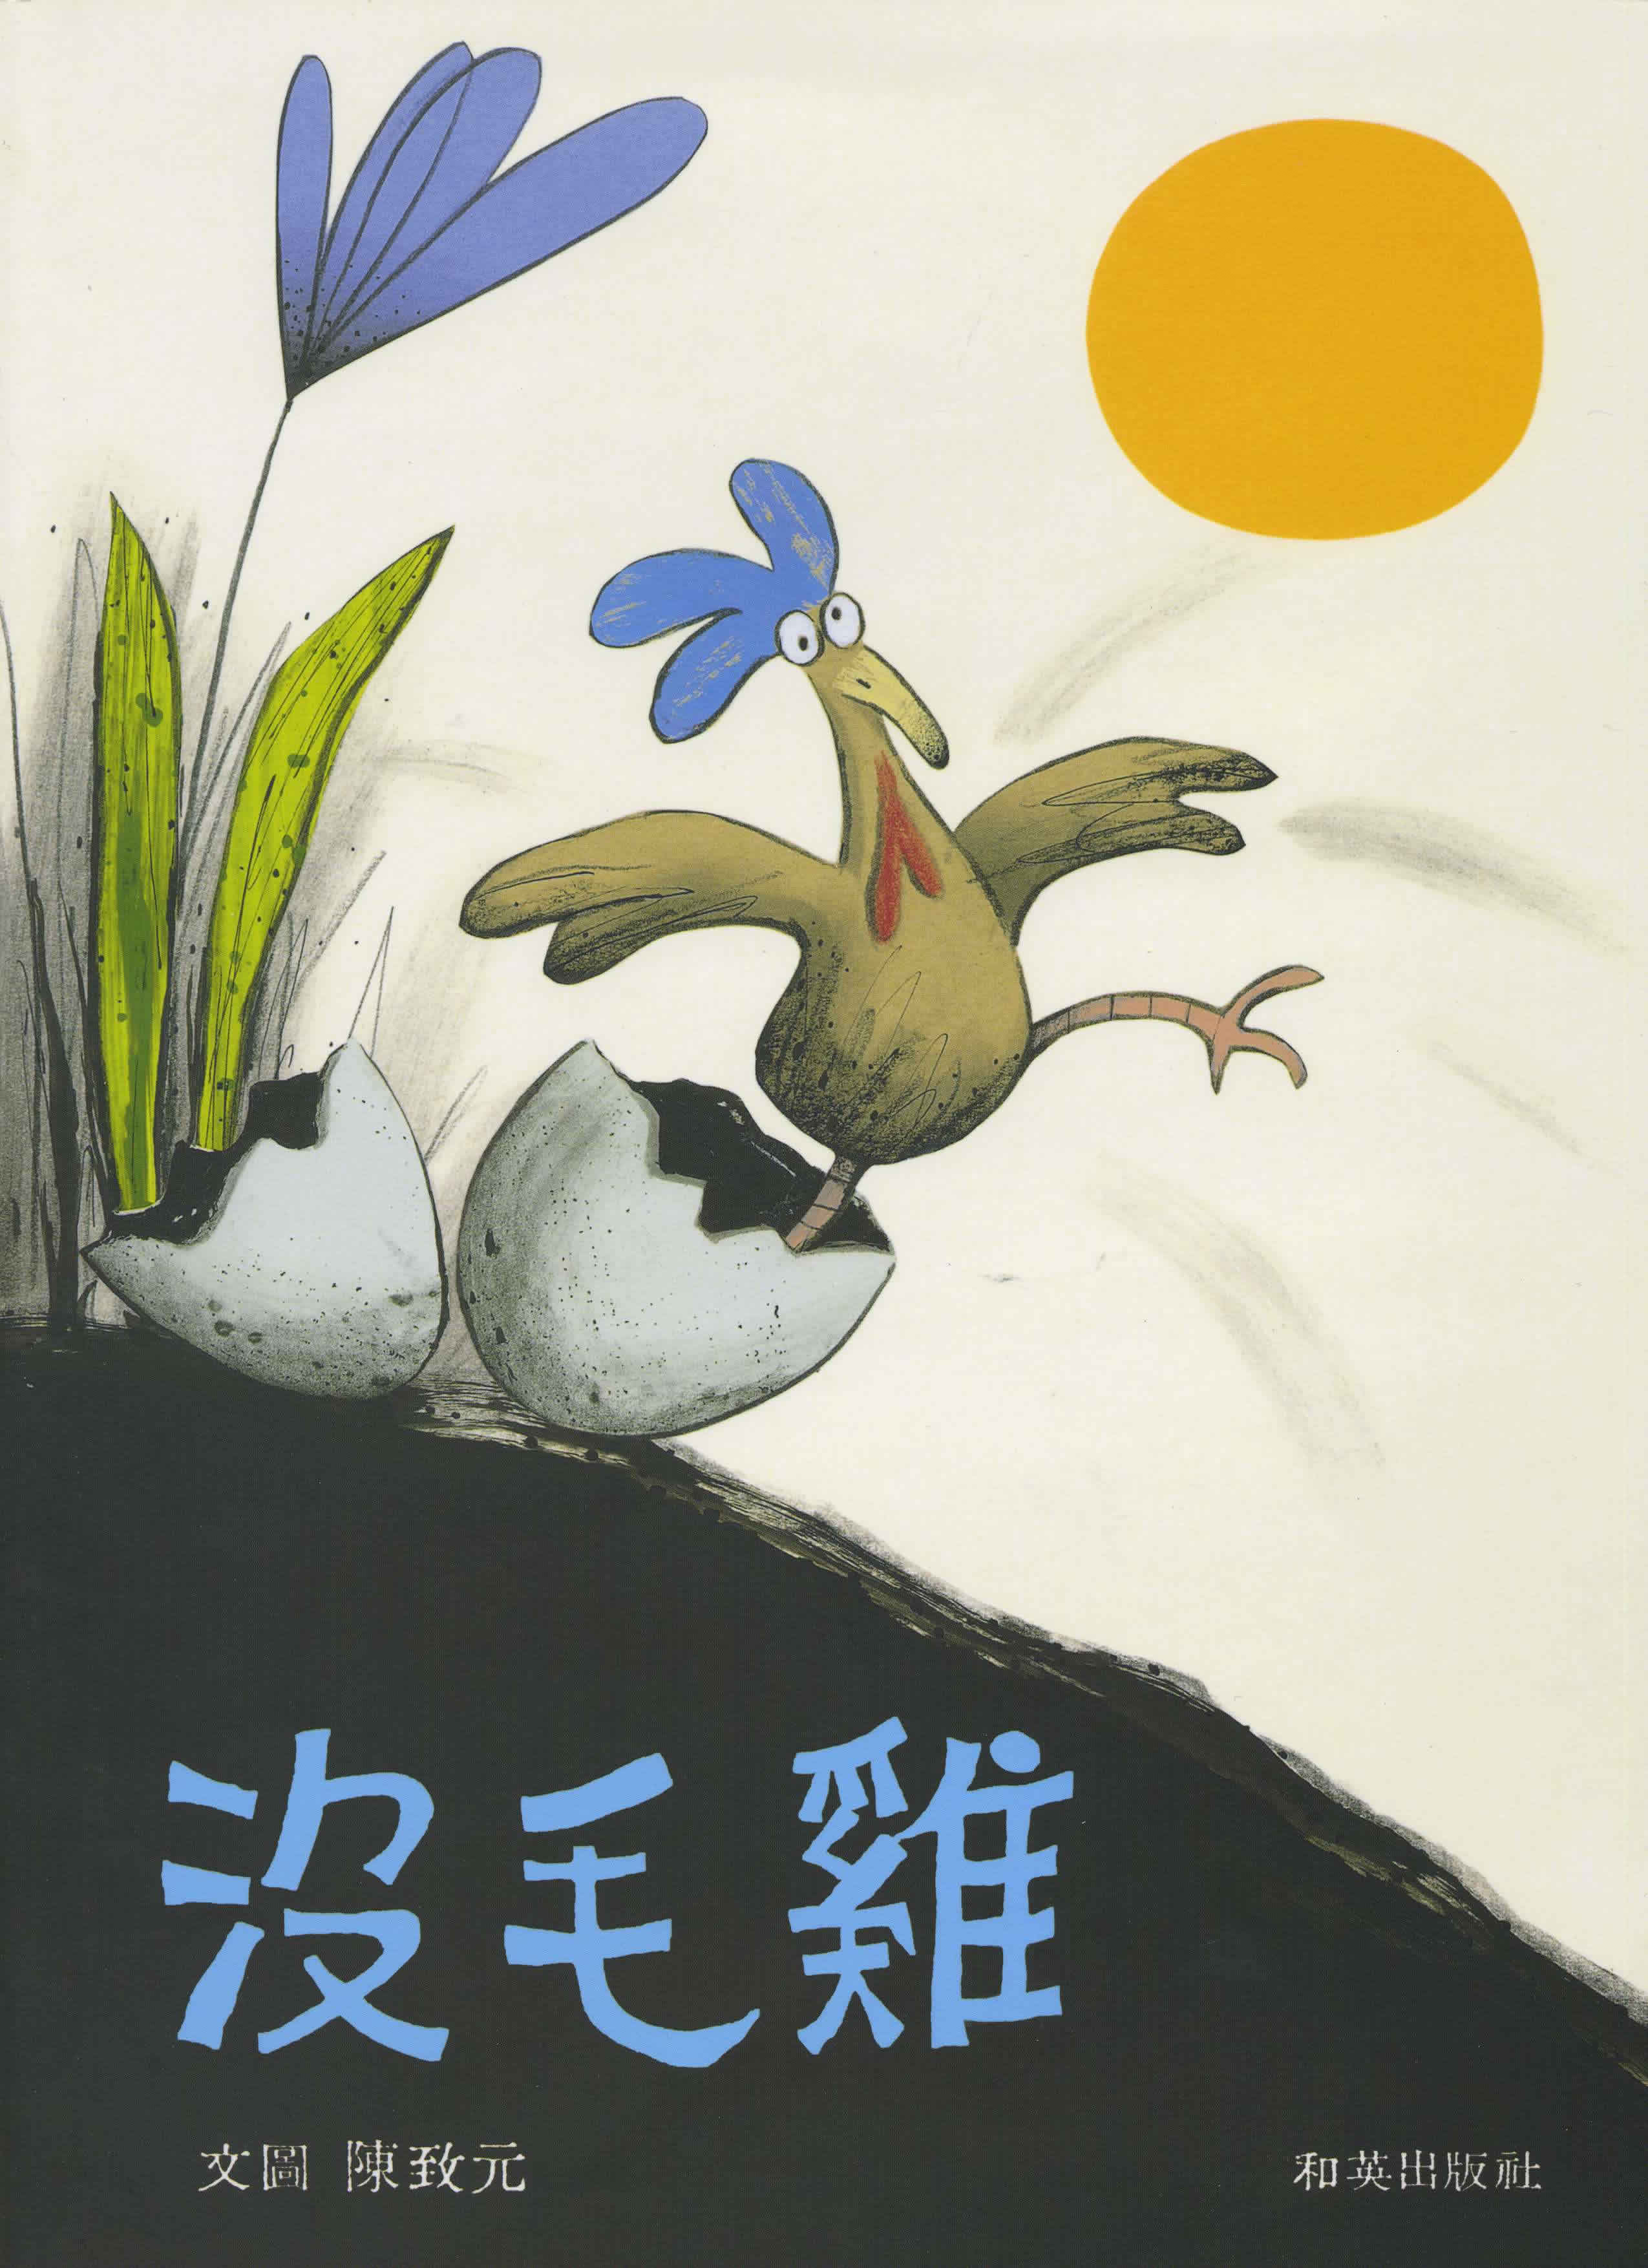 Chen Zhiyuan: Mei mao ji (The Featherless Chicken) (bilingual Chinese-English) (+ CD)<br>ISBN: 986-7942-24-8, 9867942248, 978-986-7942-24-1, 9789867942241